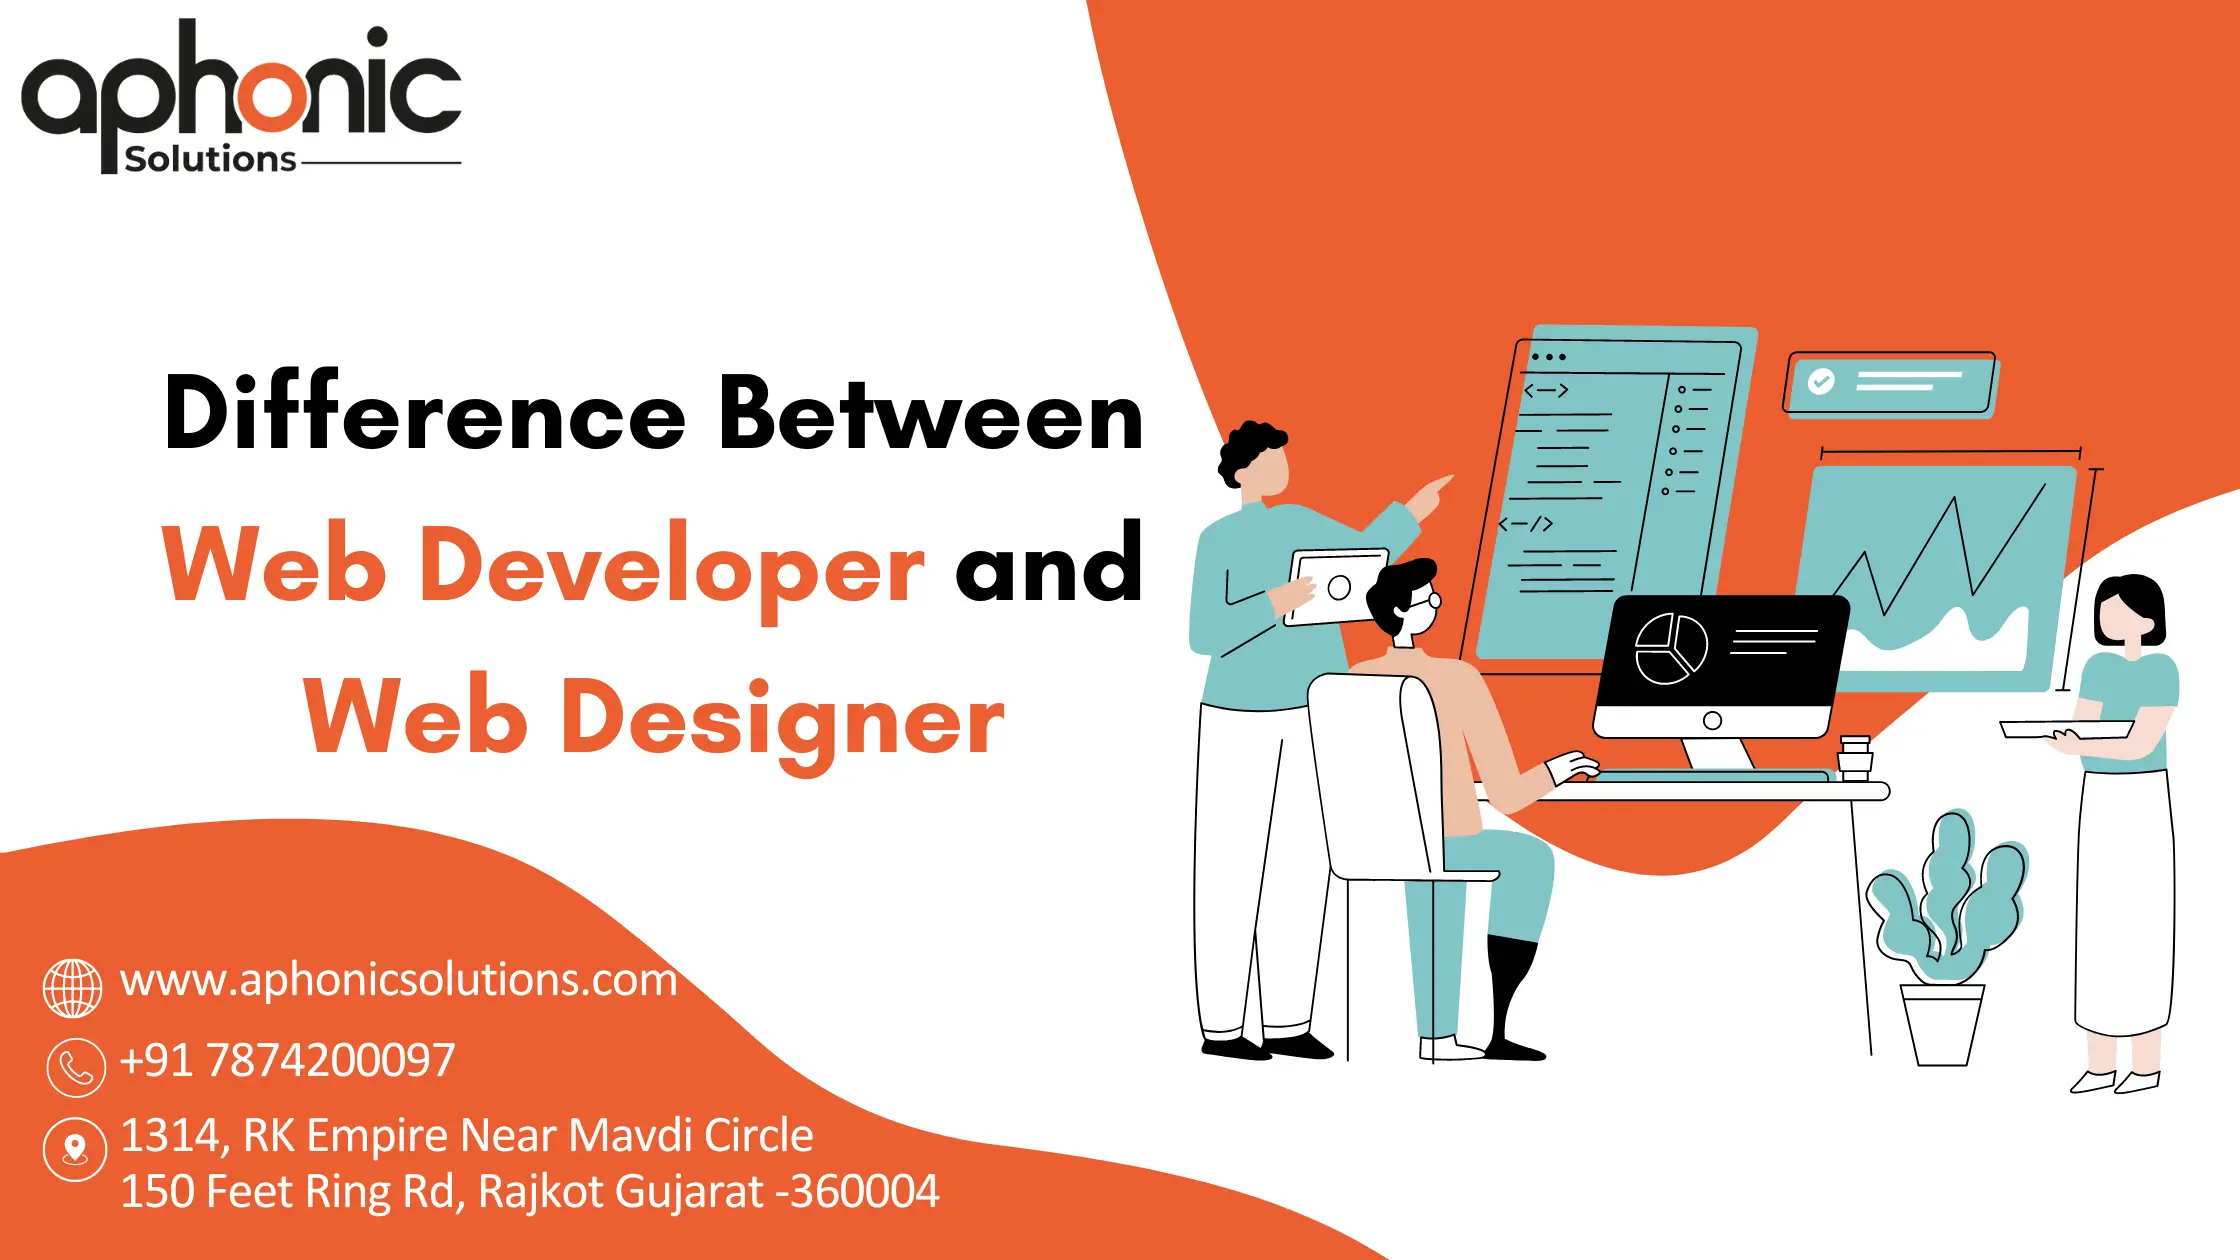 Web Developer and Web Designer